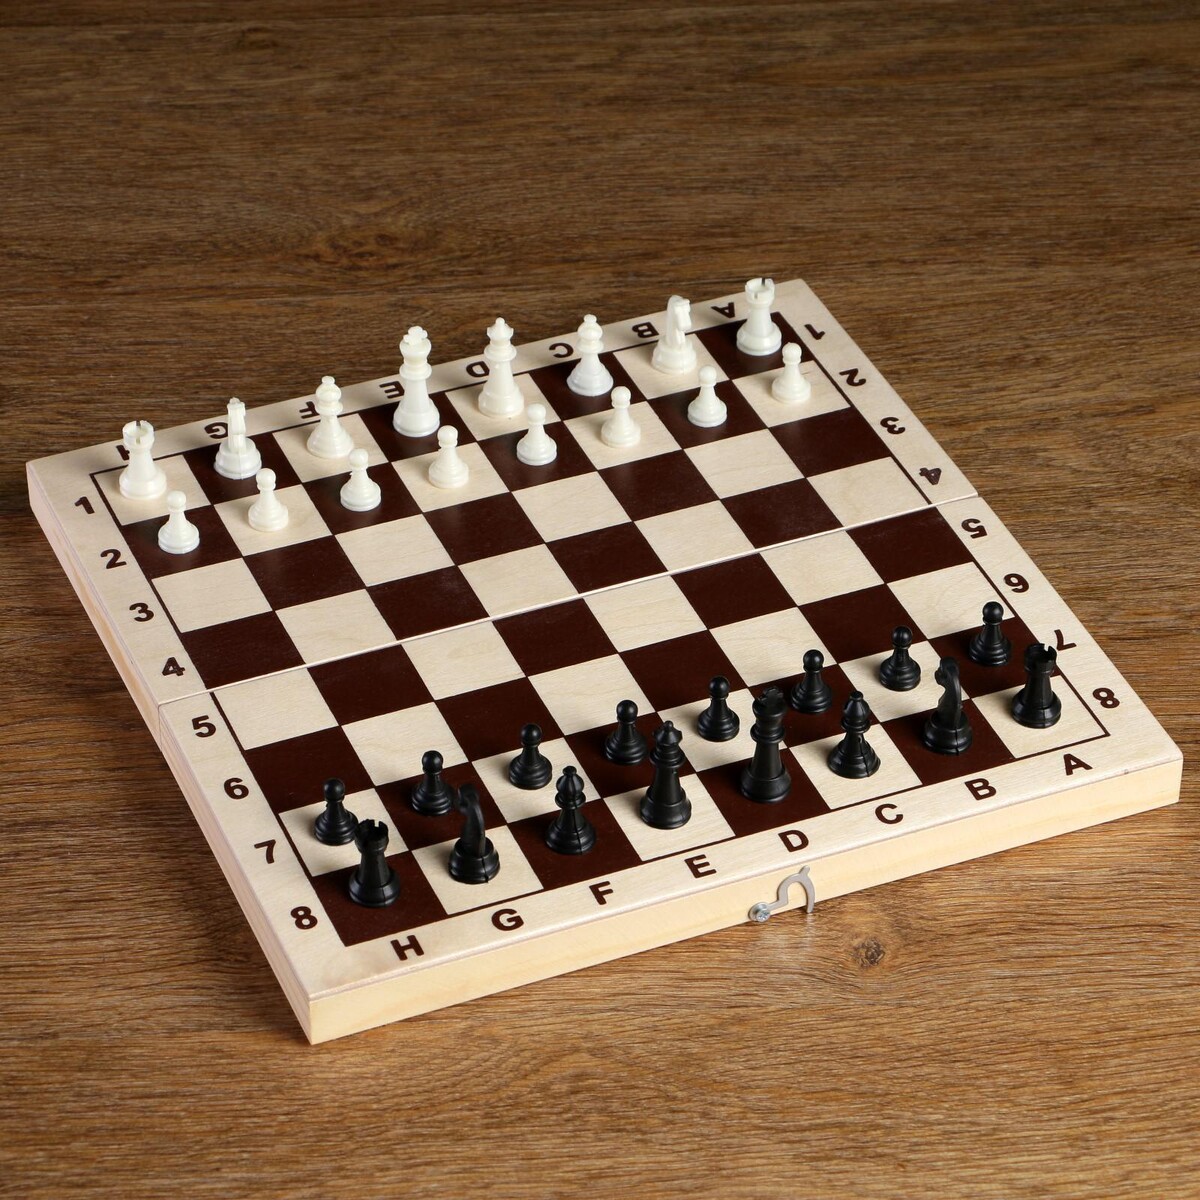 Шахматные фигуры, пластик, король h-4.2 см, пешка h-2 см стрекоза король и драконы